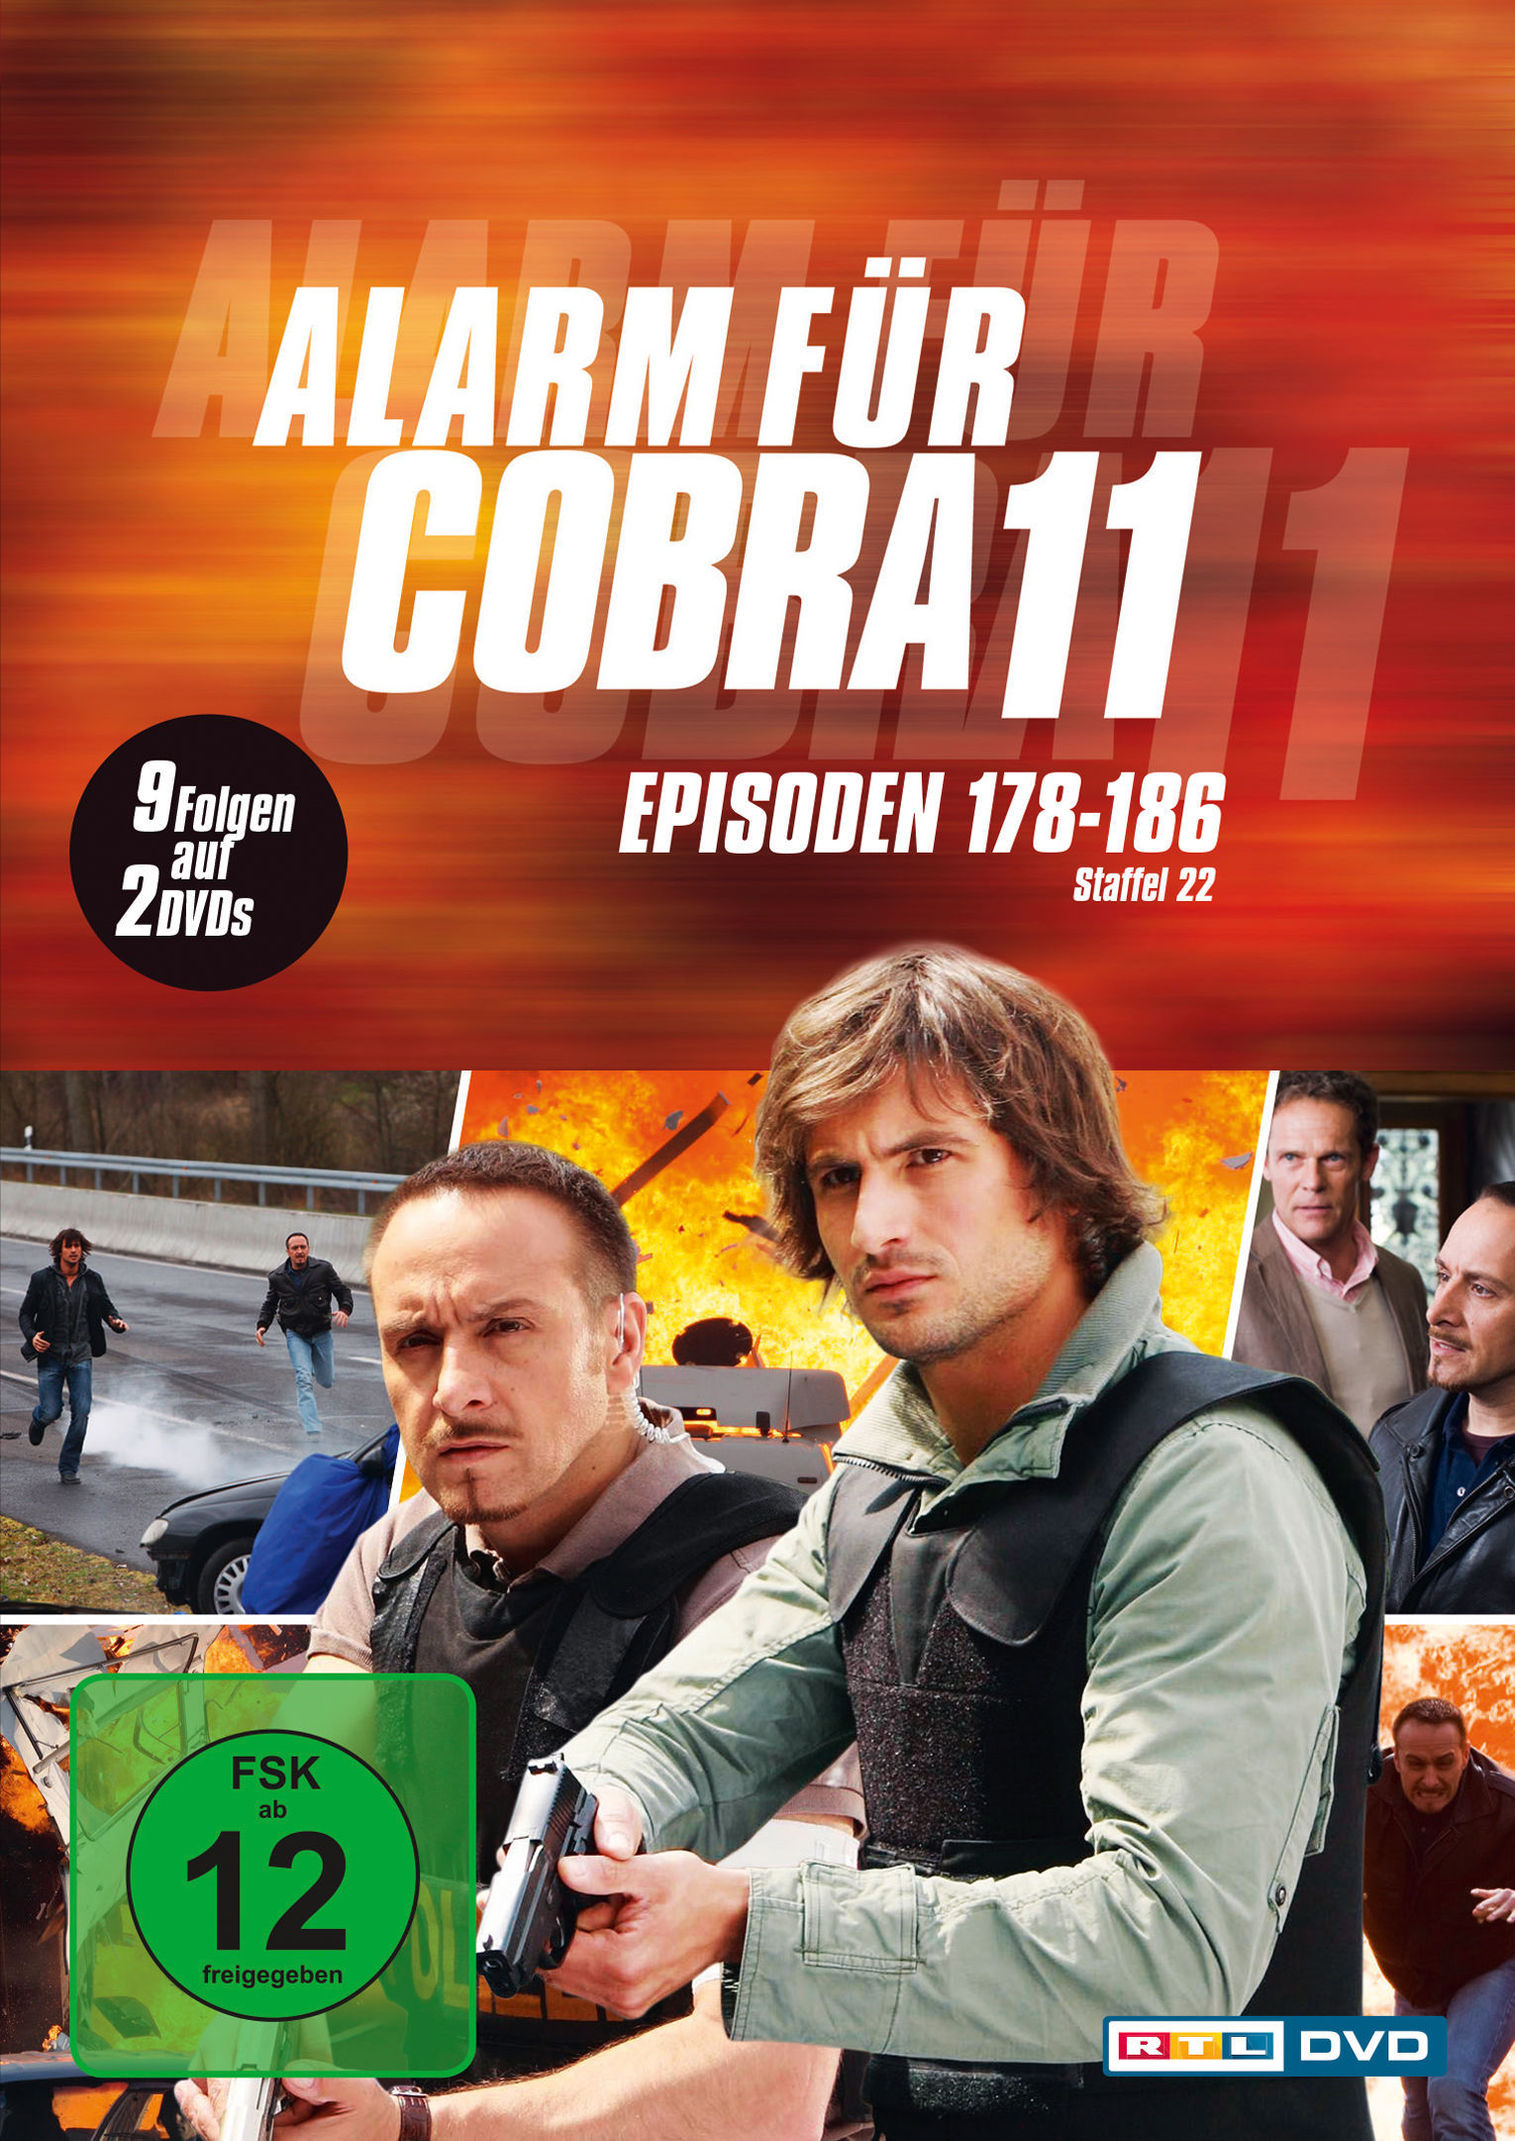 Alarm für Cobra 11 - Staffel 22 DVD bei Weltbild.de bestellen